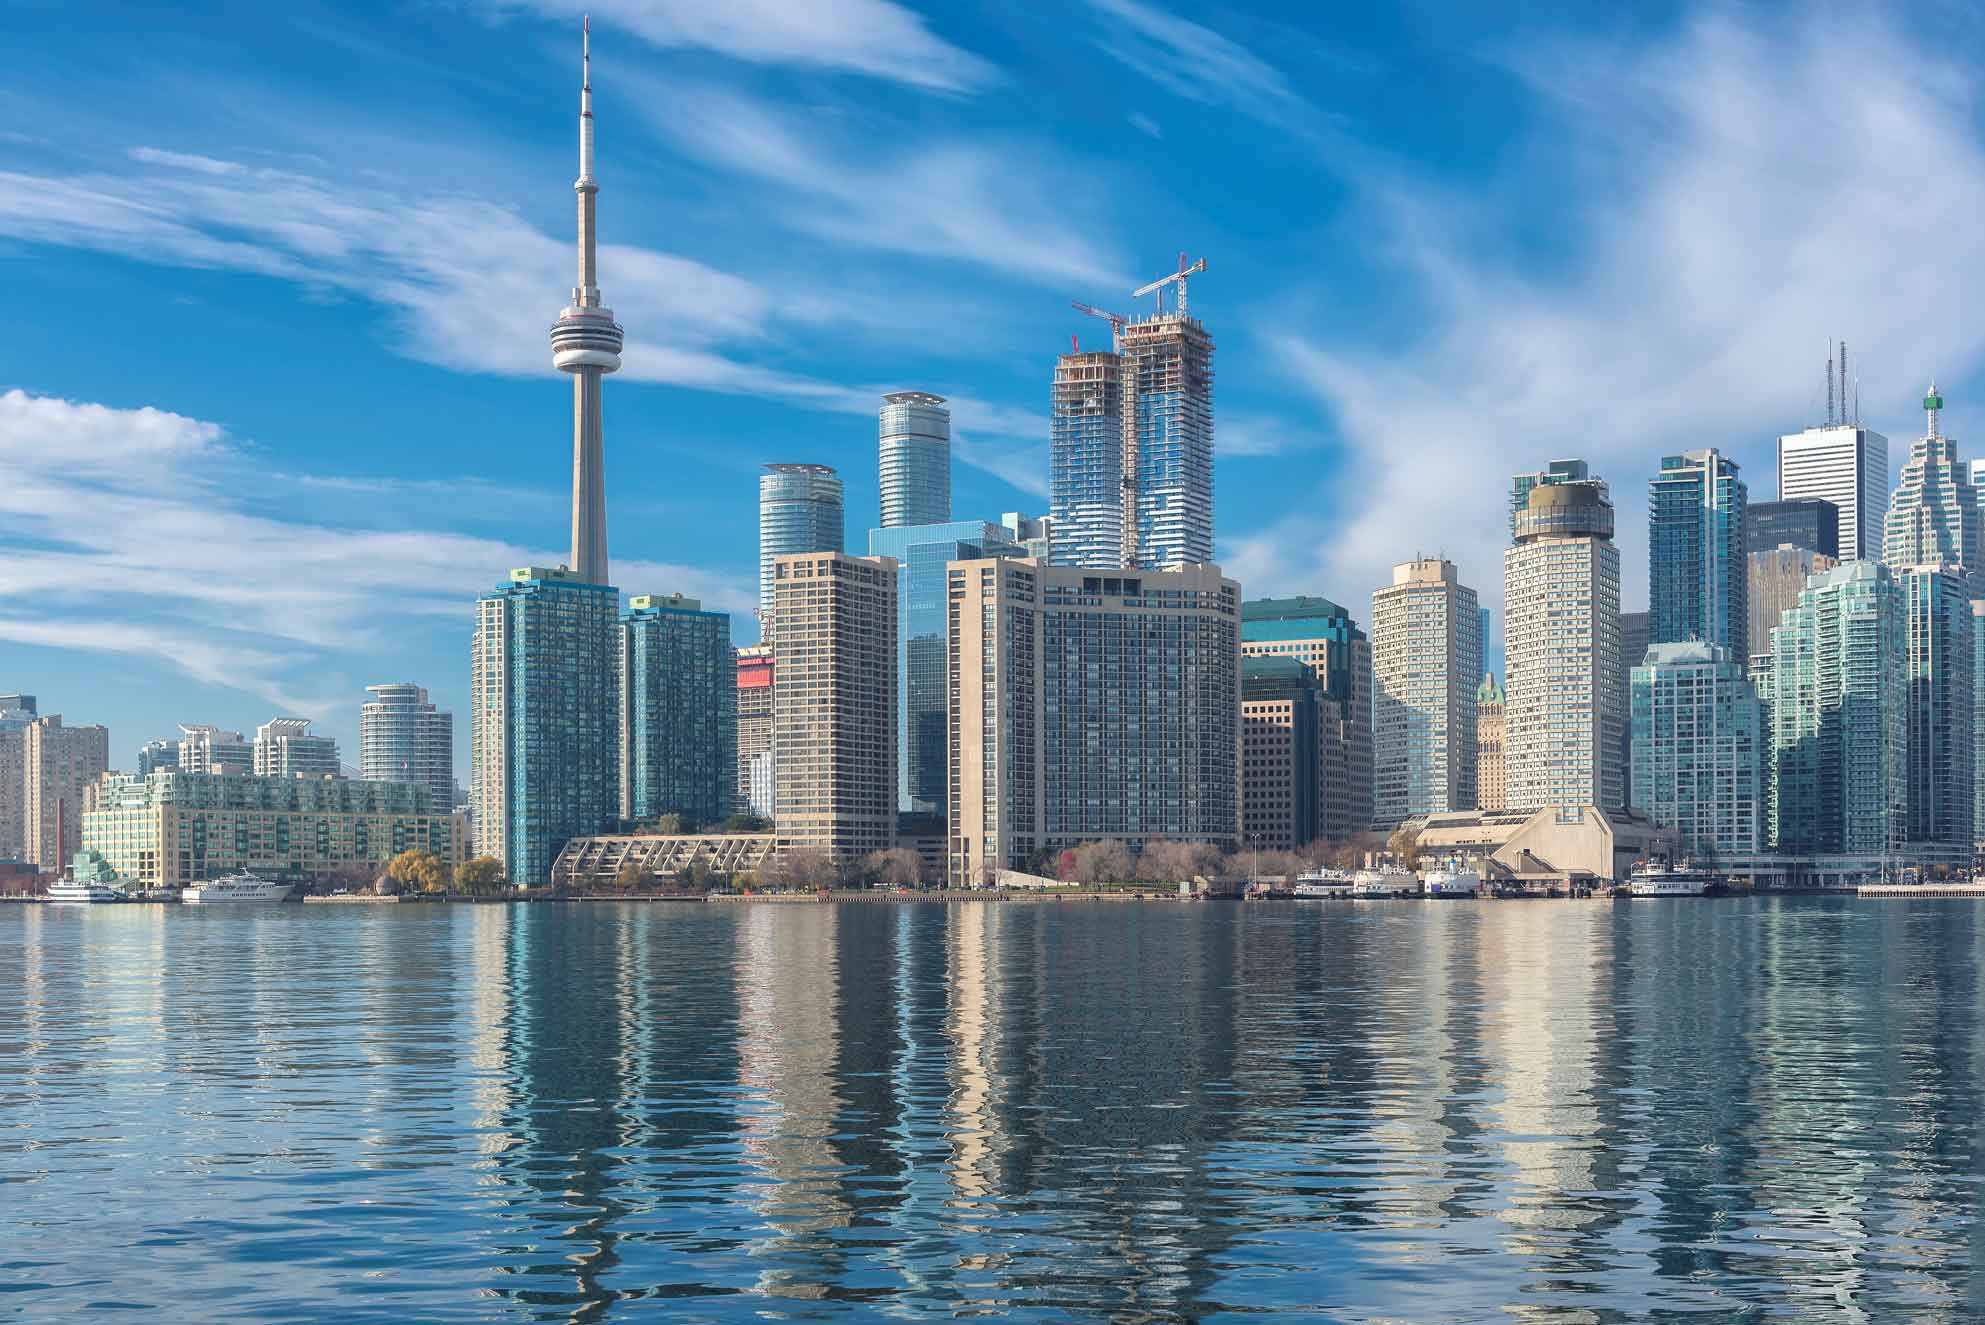 Toronto City Skyline